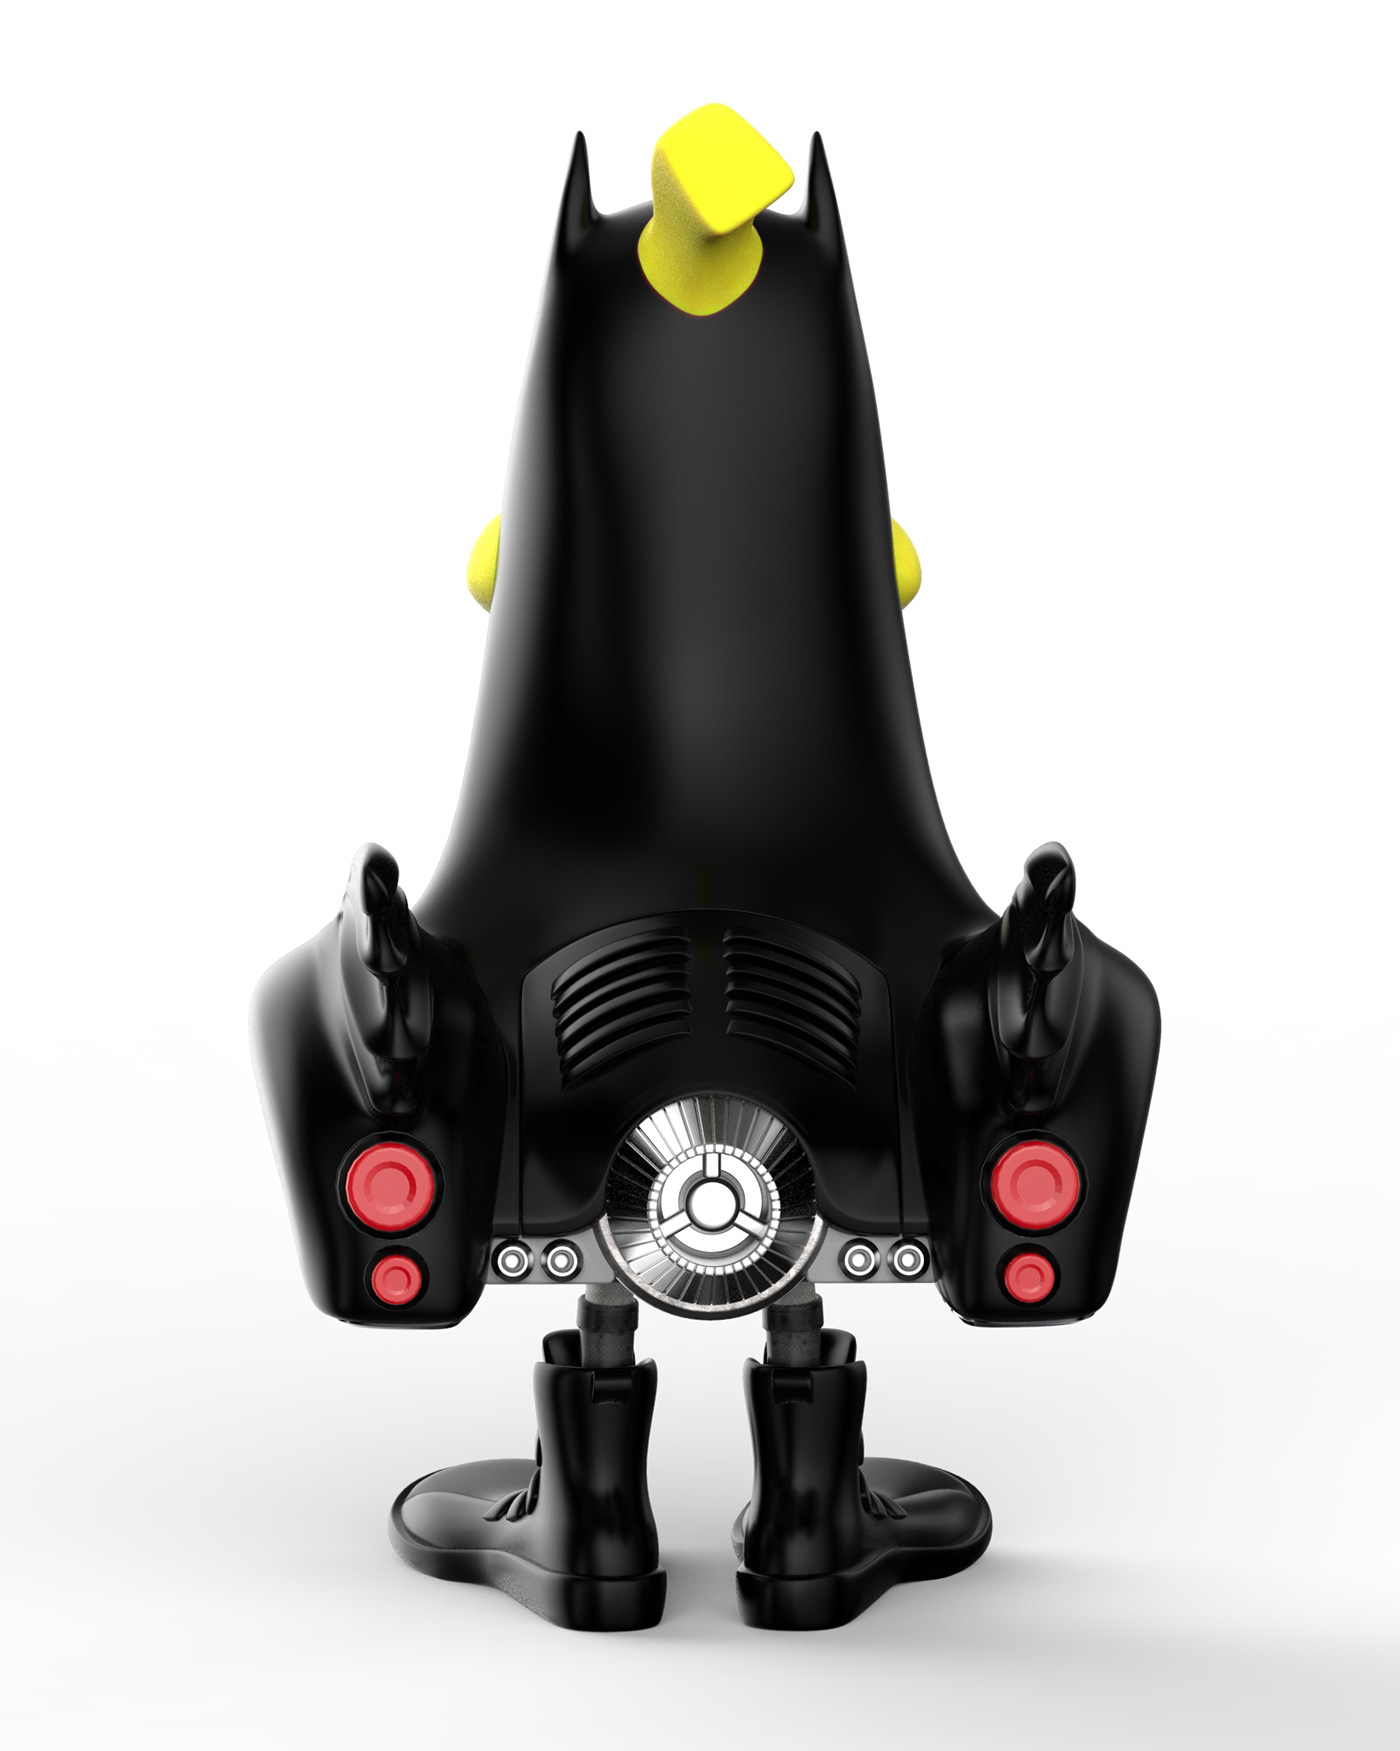 arttoy banana batman Batmobile Character duck resintoys toy vinyltoys